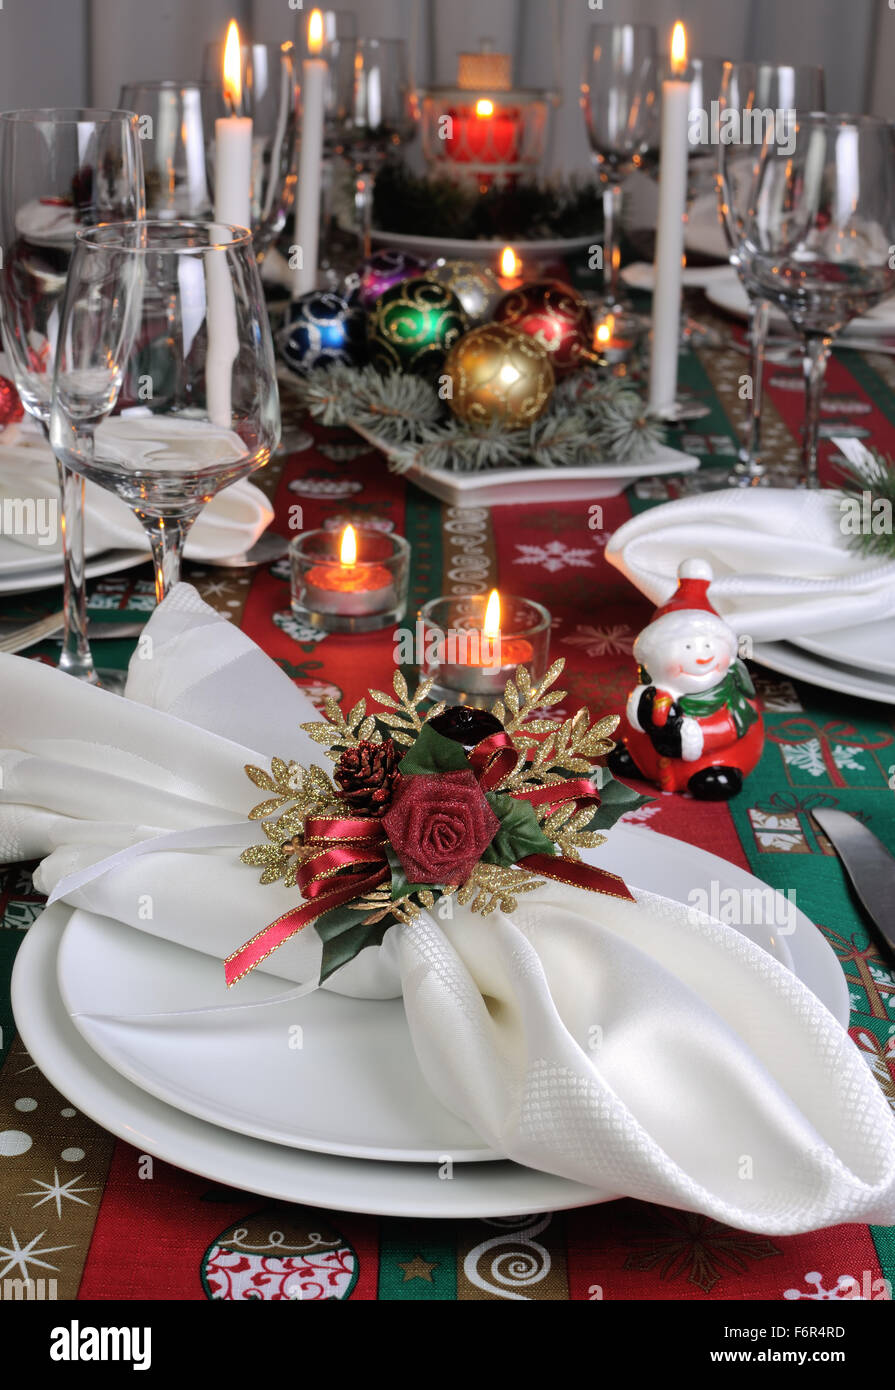 Serviette pliée décoratif sur la table de Noël Banque D'Images